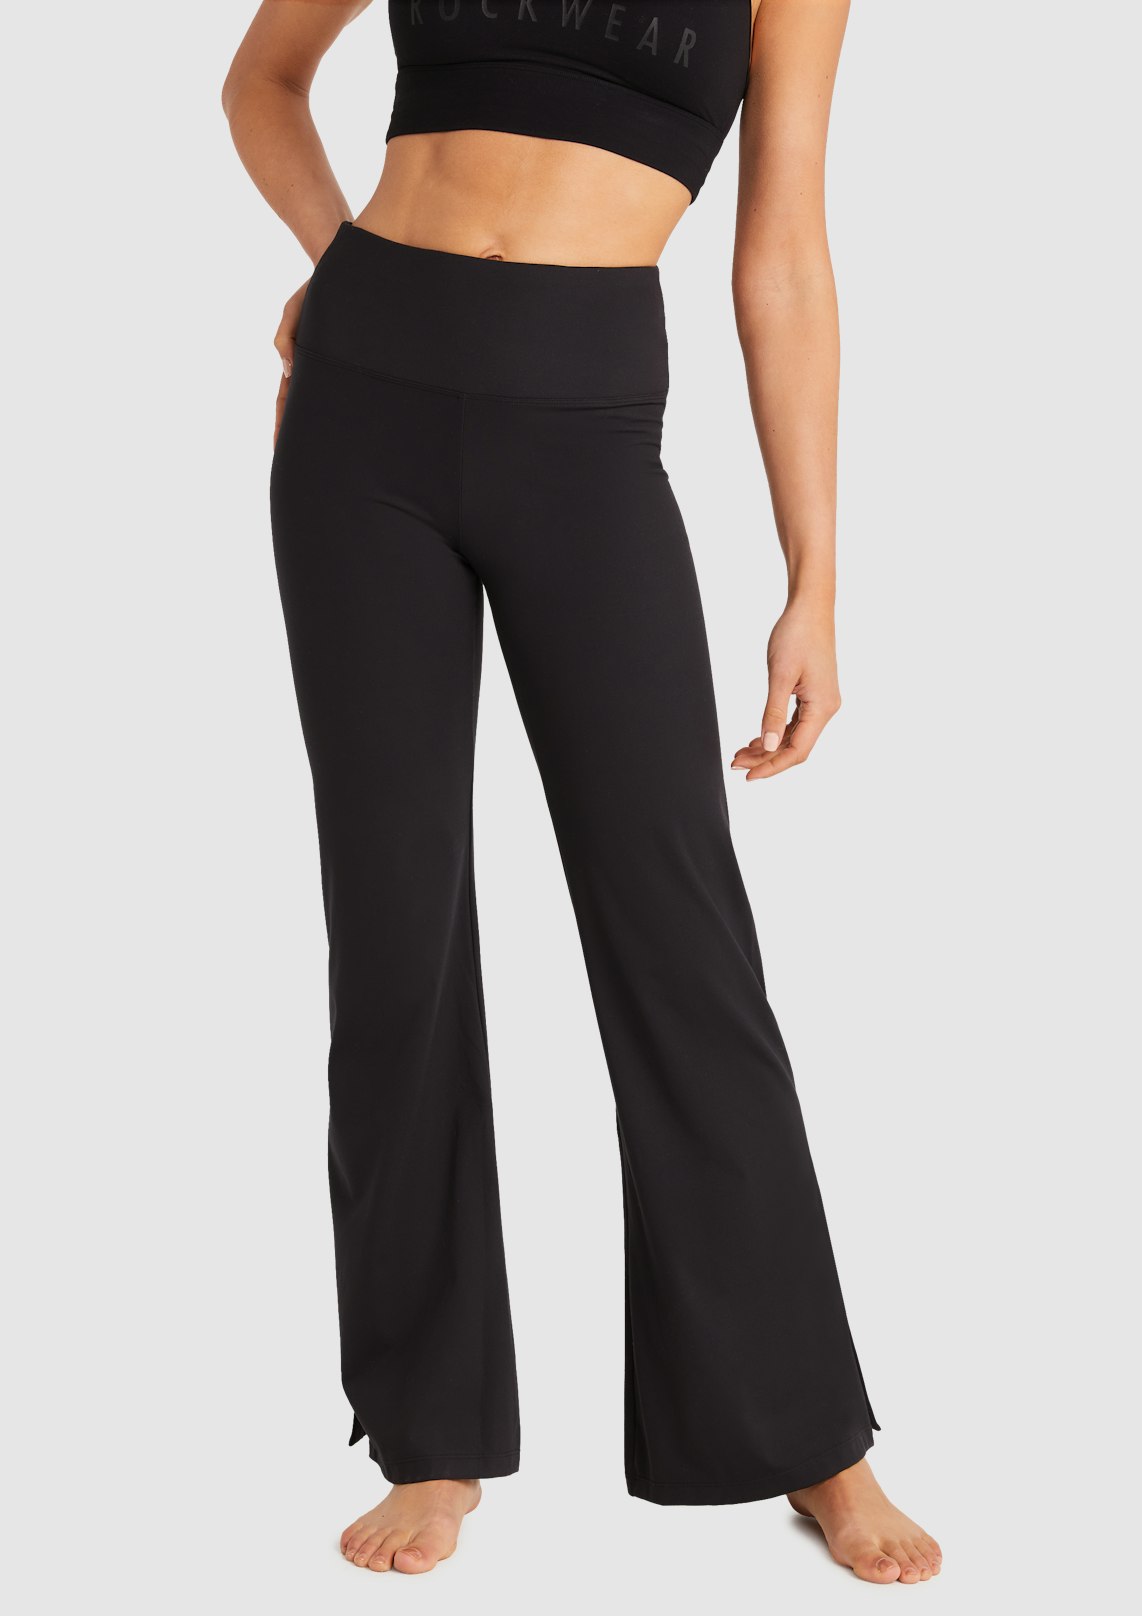 Black Flared Yoga Pant, Women's Bottom